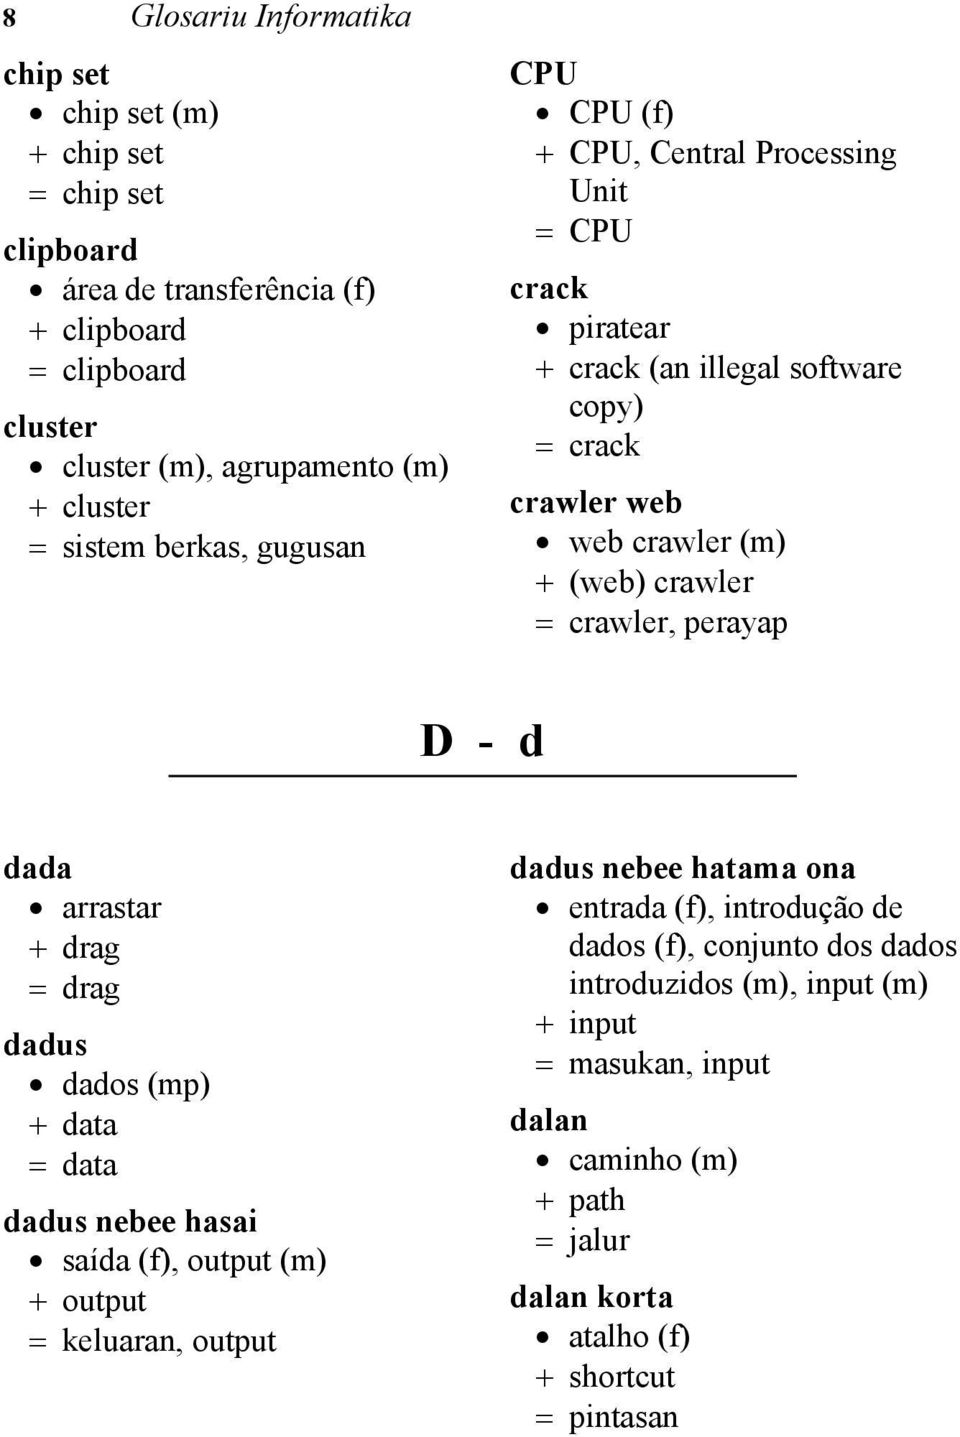 crawler, perayap D - d dada arrastar drag drag dadus dados (mp) data data dadus nebee hasai saída (f), output (m) output keluaran, output dadus nebee hatama ona